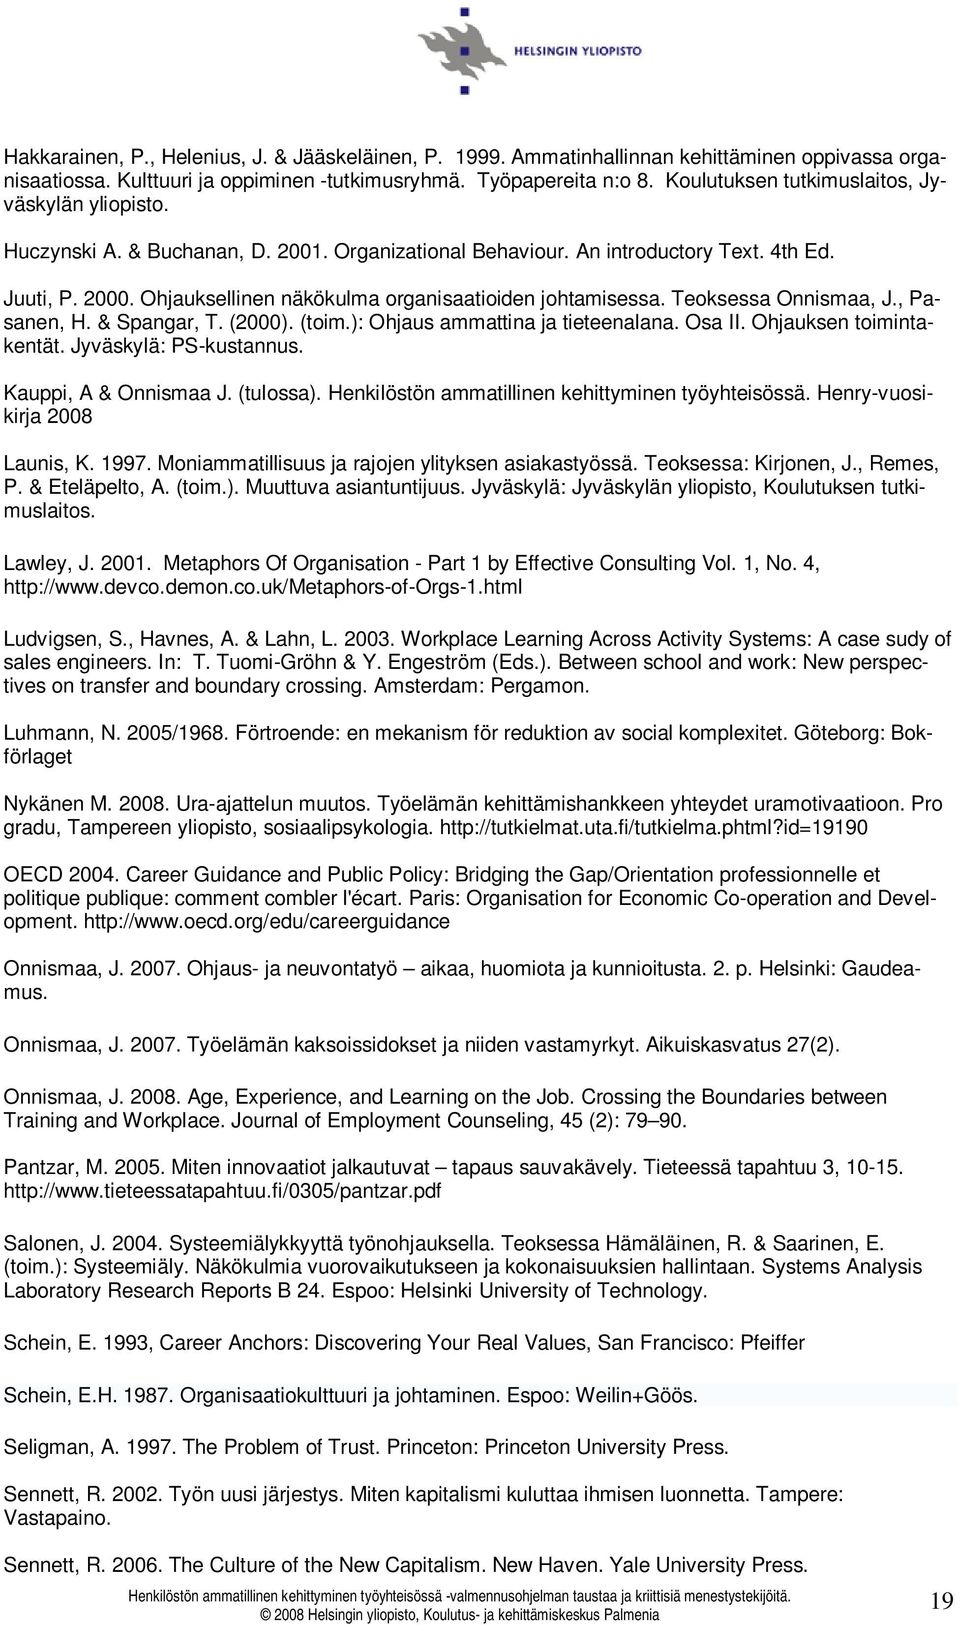 Ohjauksellinen näkökulma organisaatioiden johtamisessa. Teoksessa Onnismaa, J., Pasanen, H. & Spangar, T. (2000). (toim.): Ohjaus ammattina ja tieteenalana. Osa II. Ohjauksen toimintakentät.